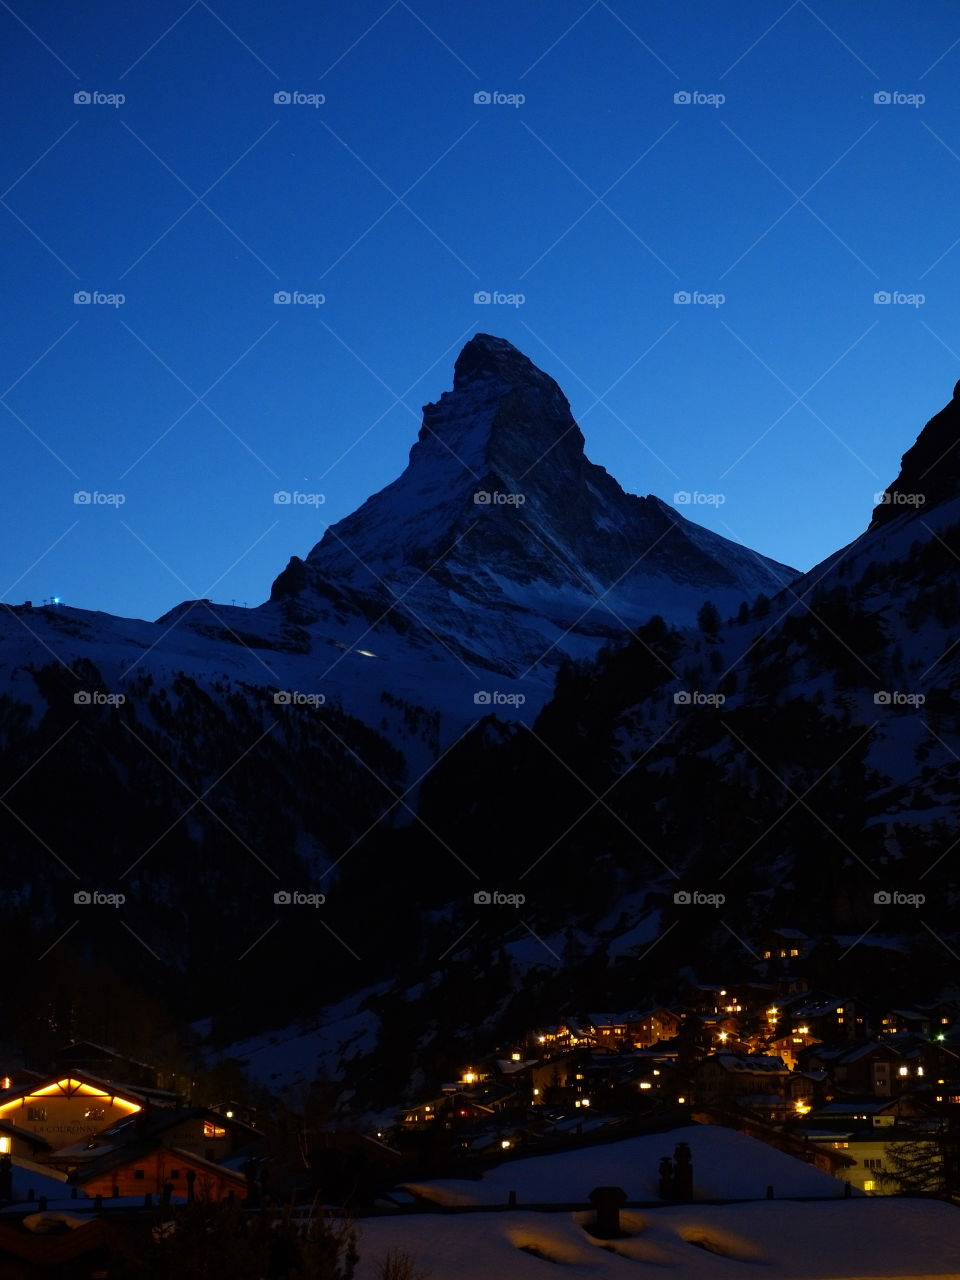 Matterhorn and zermatt at night 